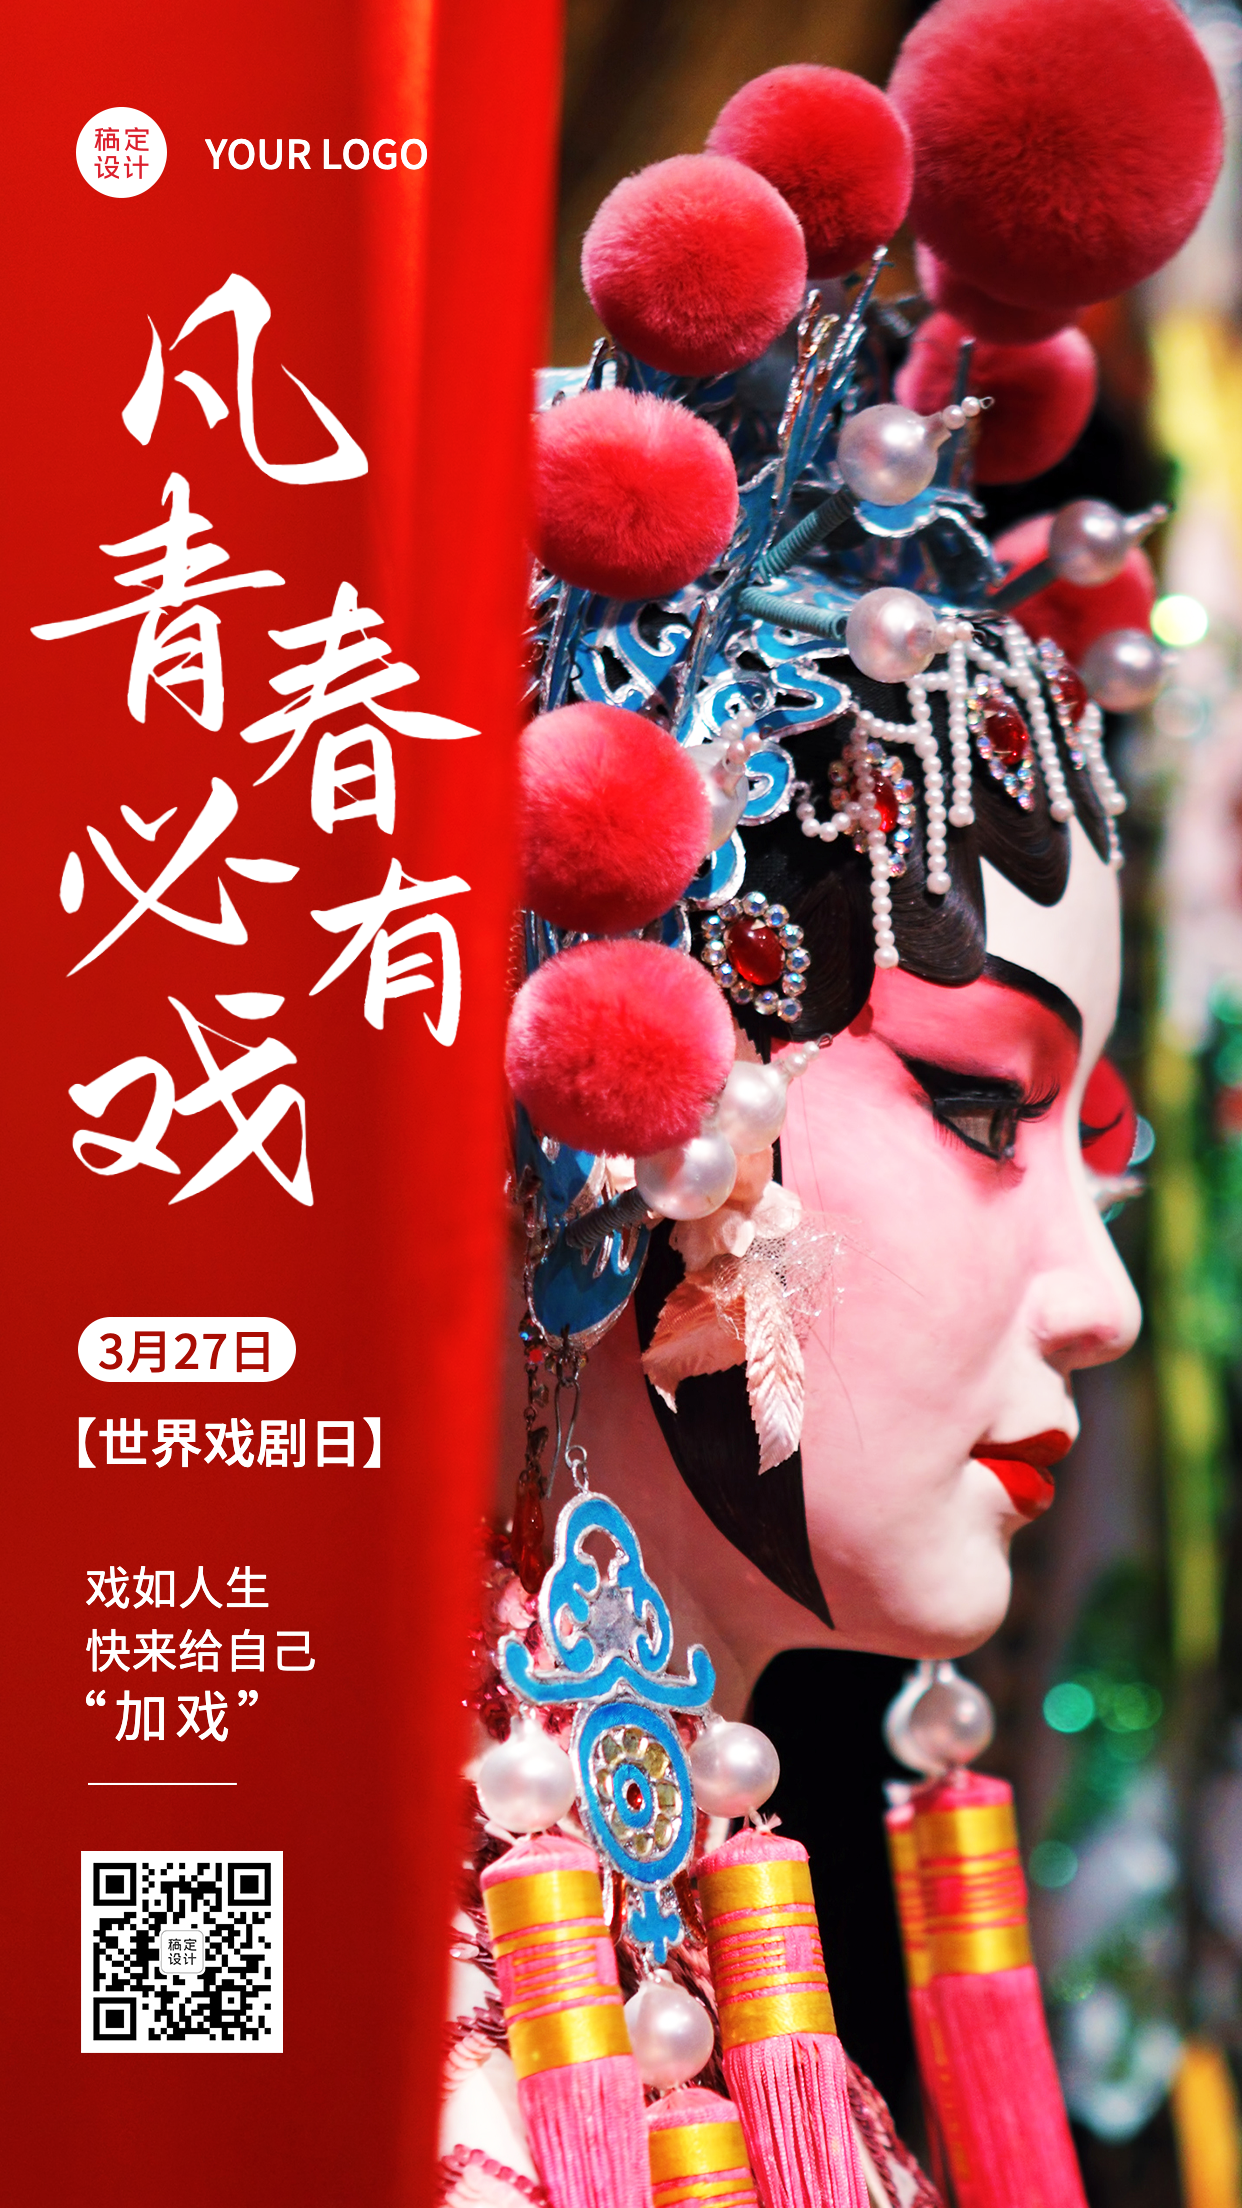 3.27世界戏剧日节日宣传中国风实景手机海报